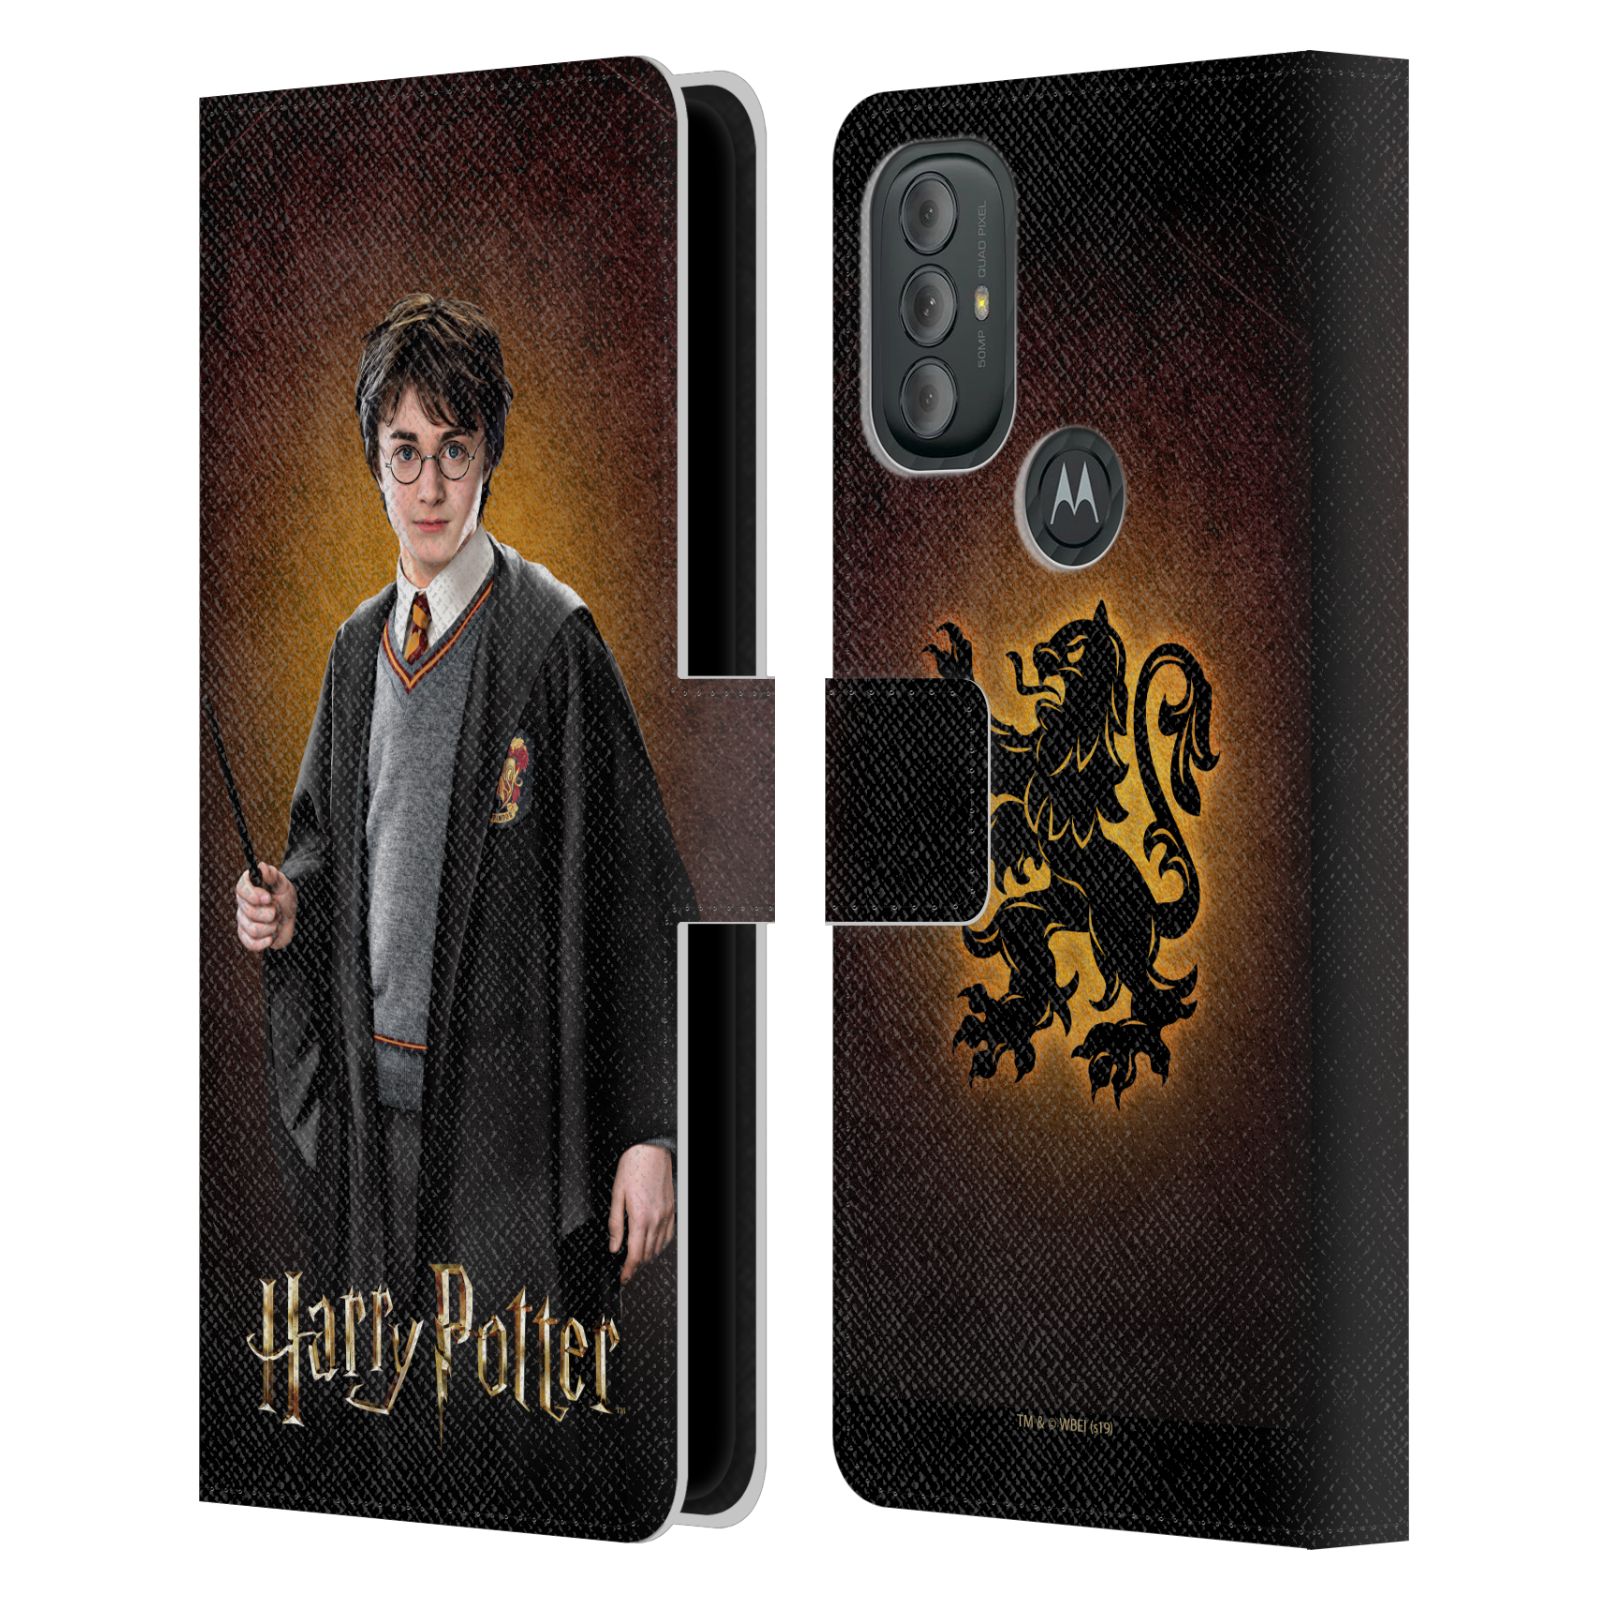 Pouzdro na mobil Motorola Moto G10 / G30 - HEAD CASE - Harry Potter - Harry Potter portrét